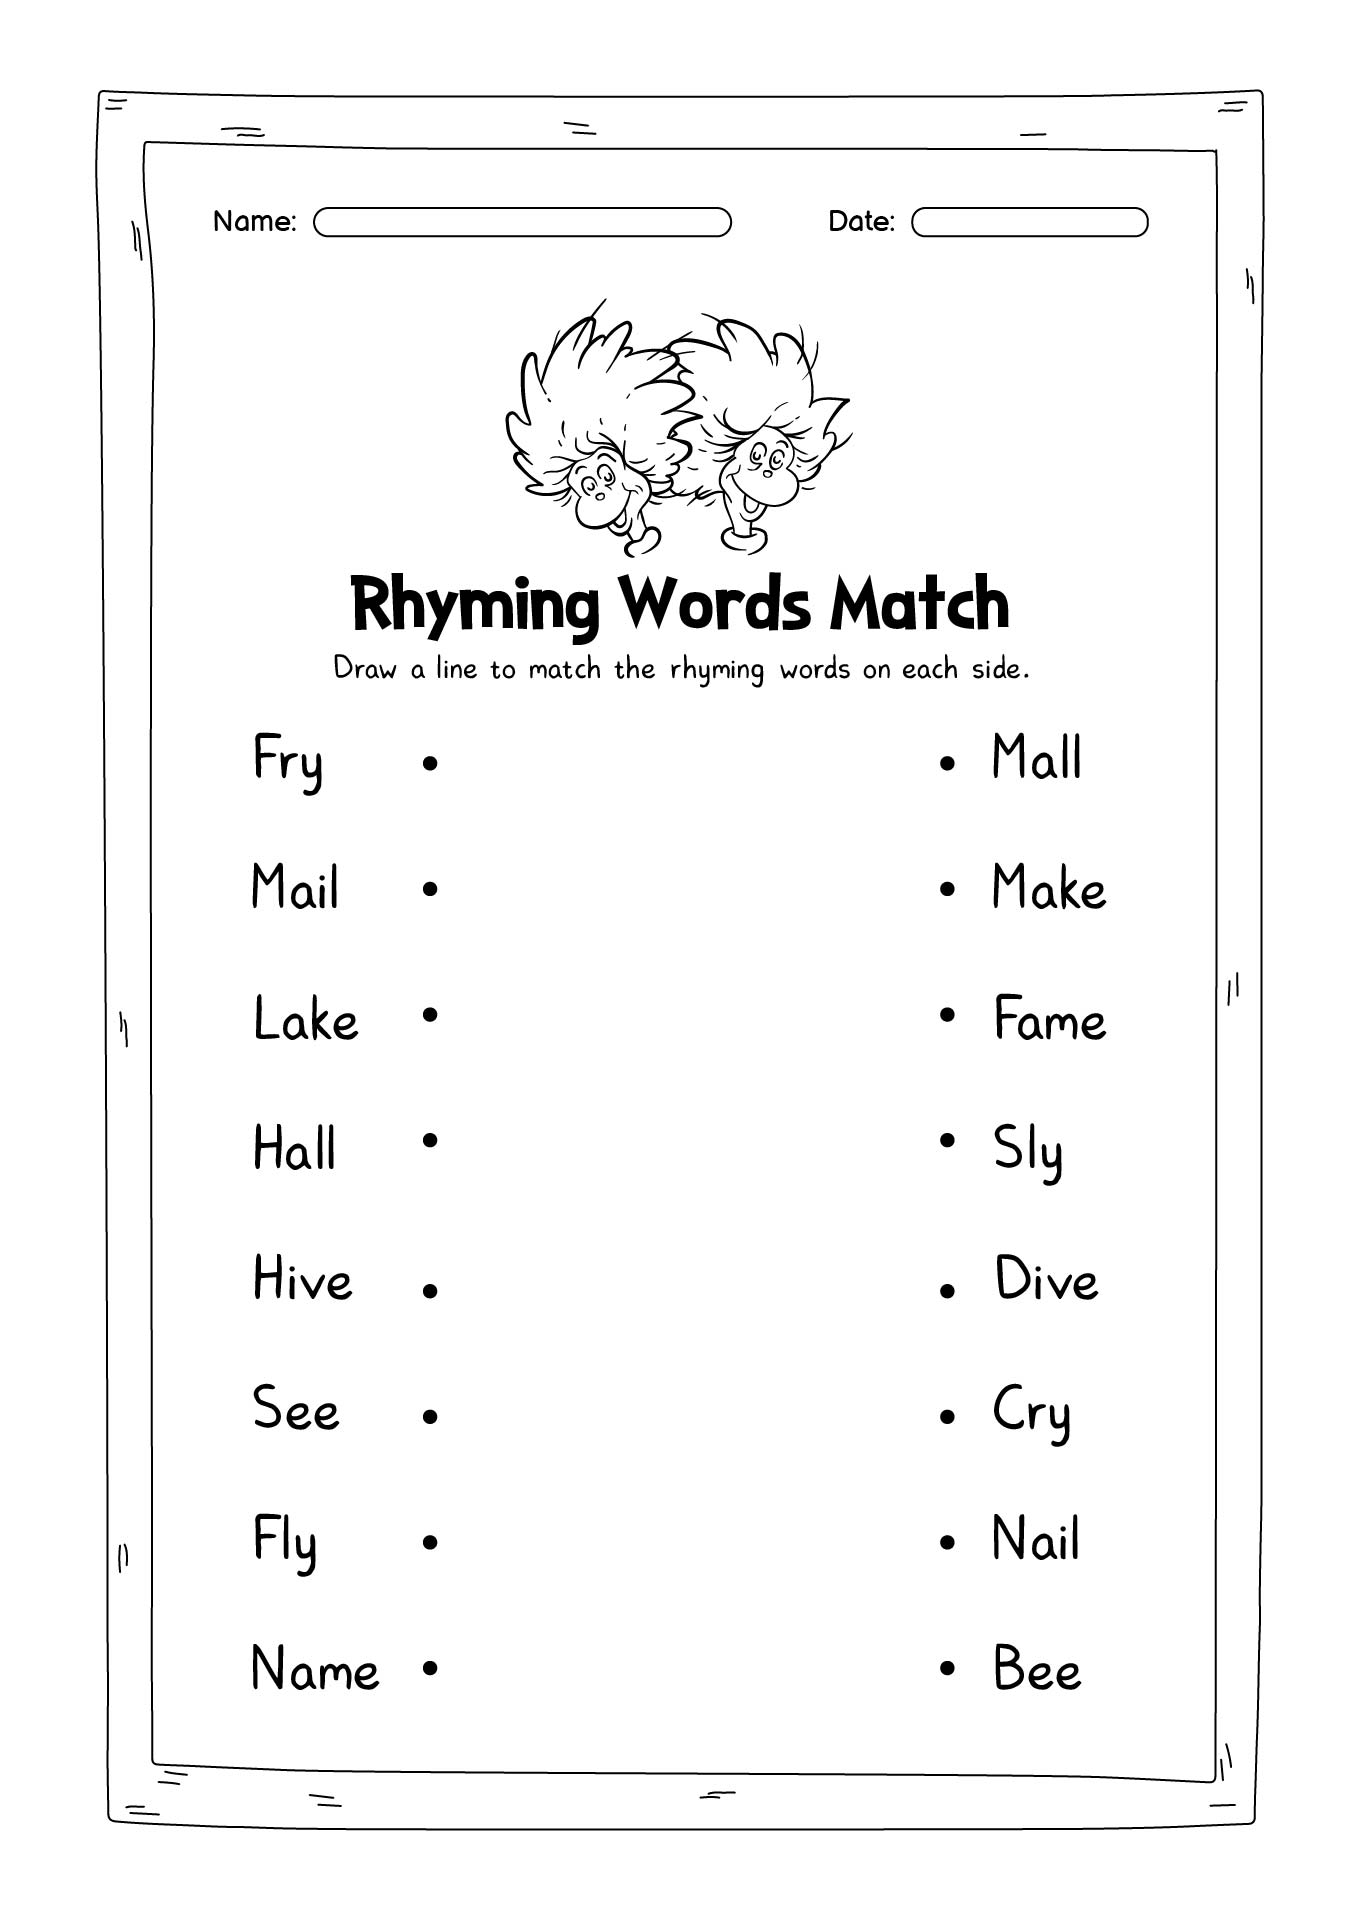 Dr. Seuss Rhyming Word Worksheet Image